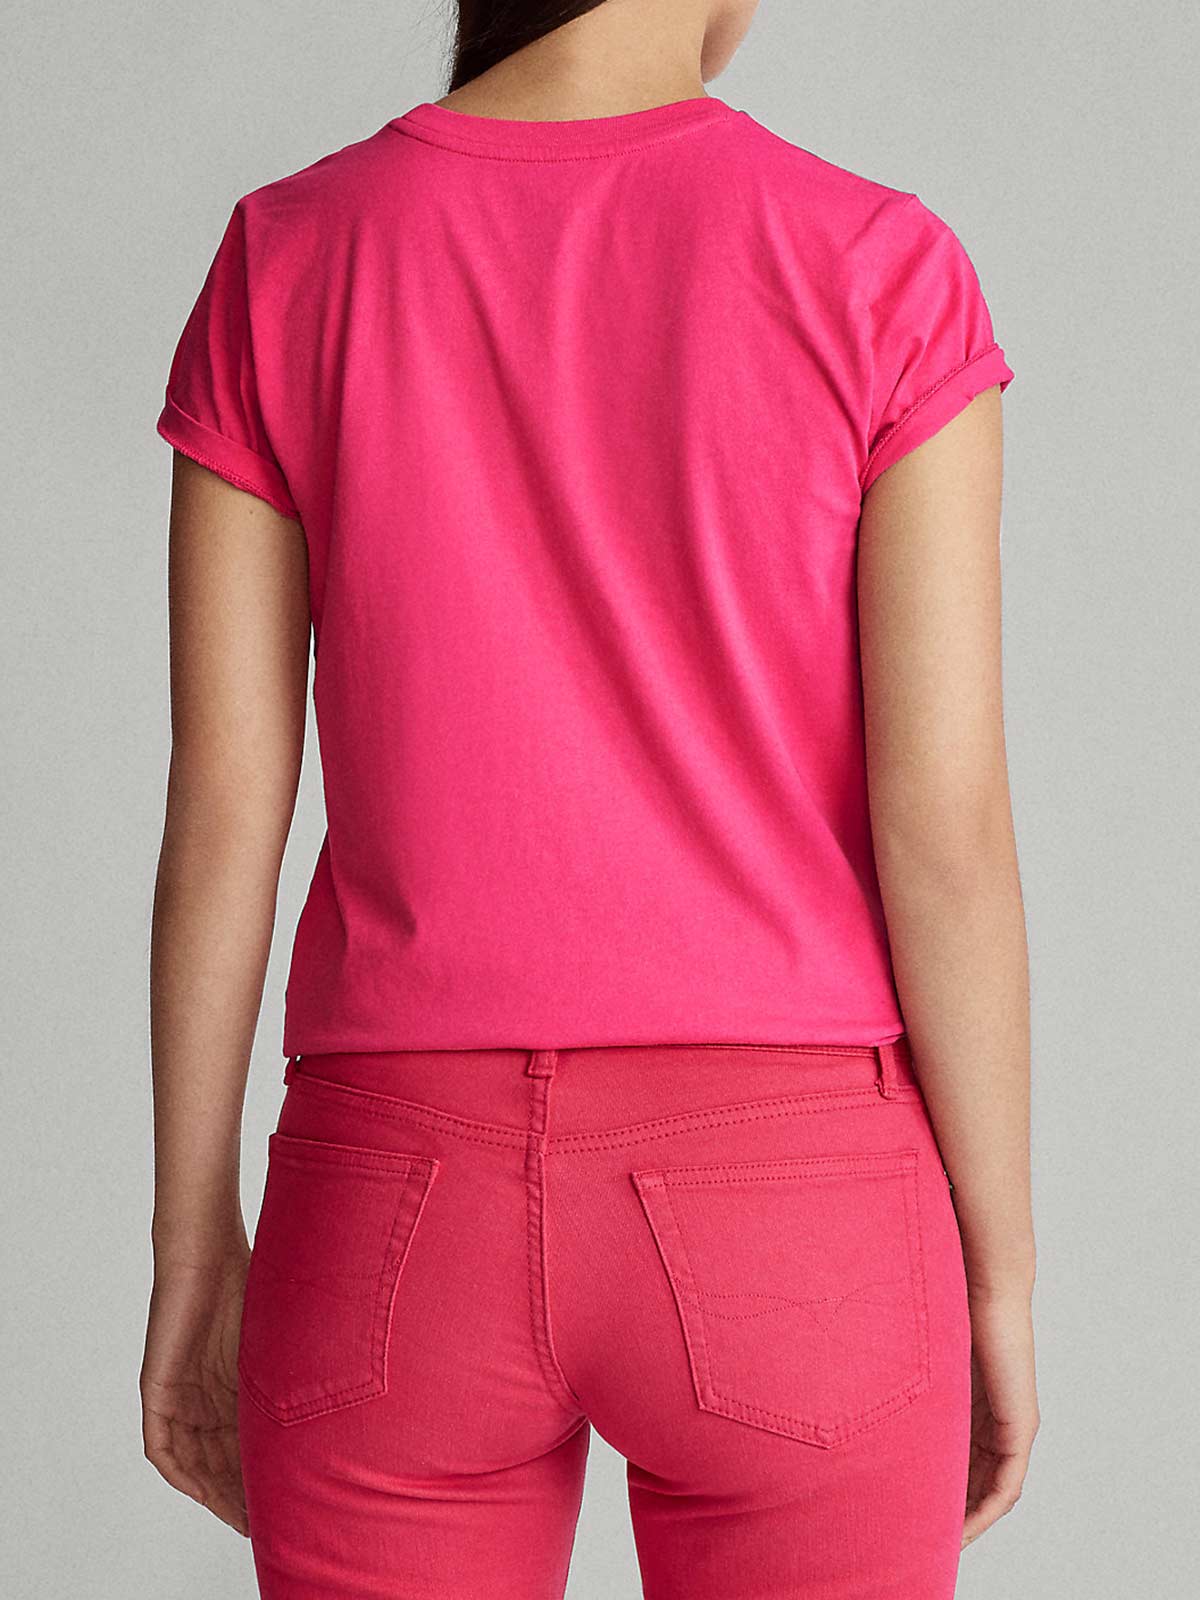 T-SHIRTMoncler in Cotone di colore Rosa Donna Abbigliamento da T-shirt e top da T-shirt 